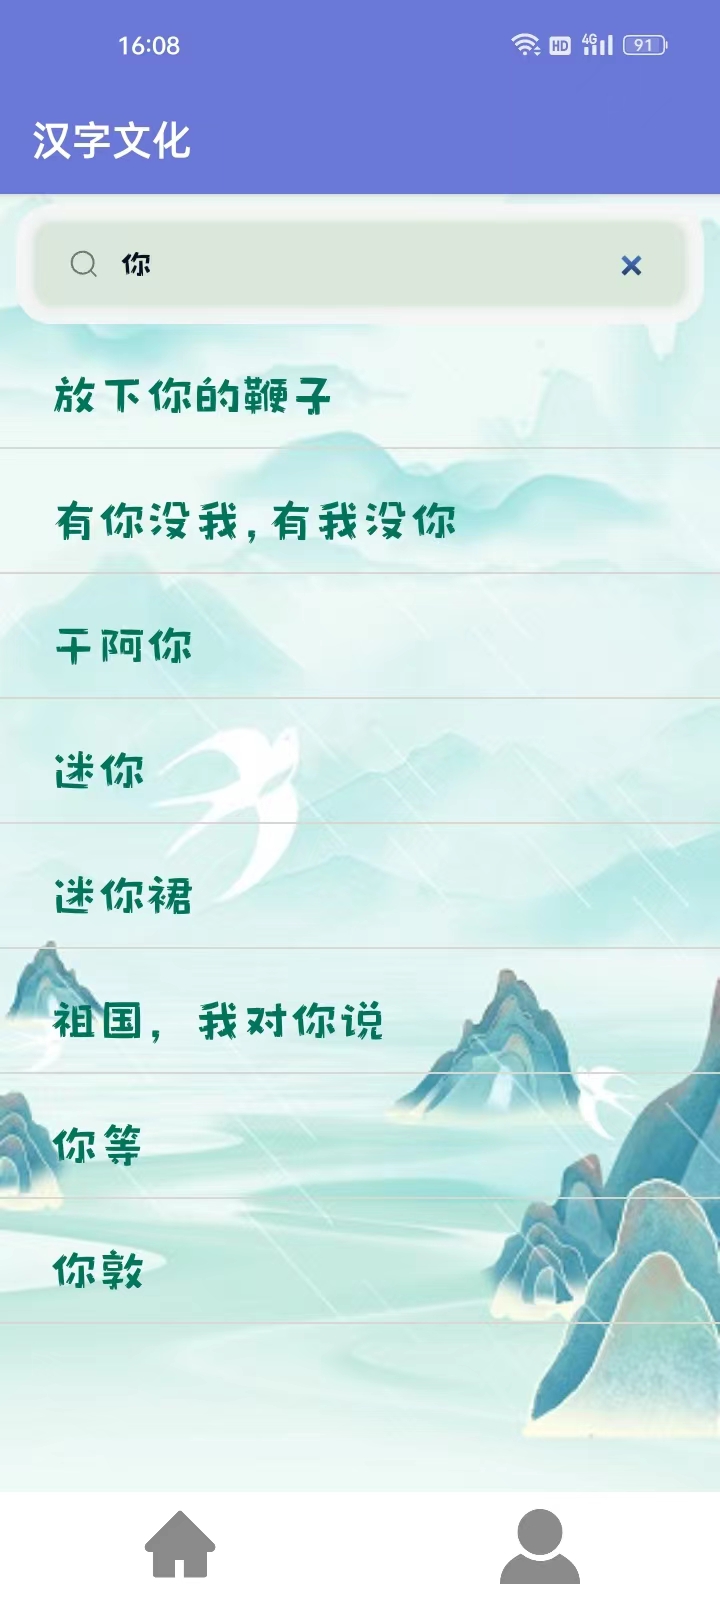 汉字文化软件,汉字文化正式版